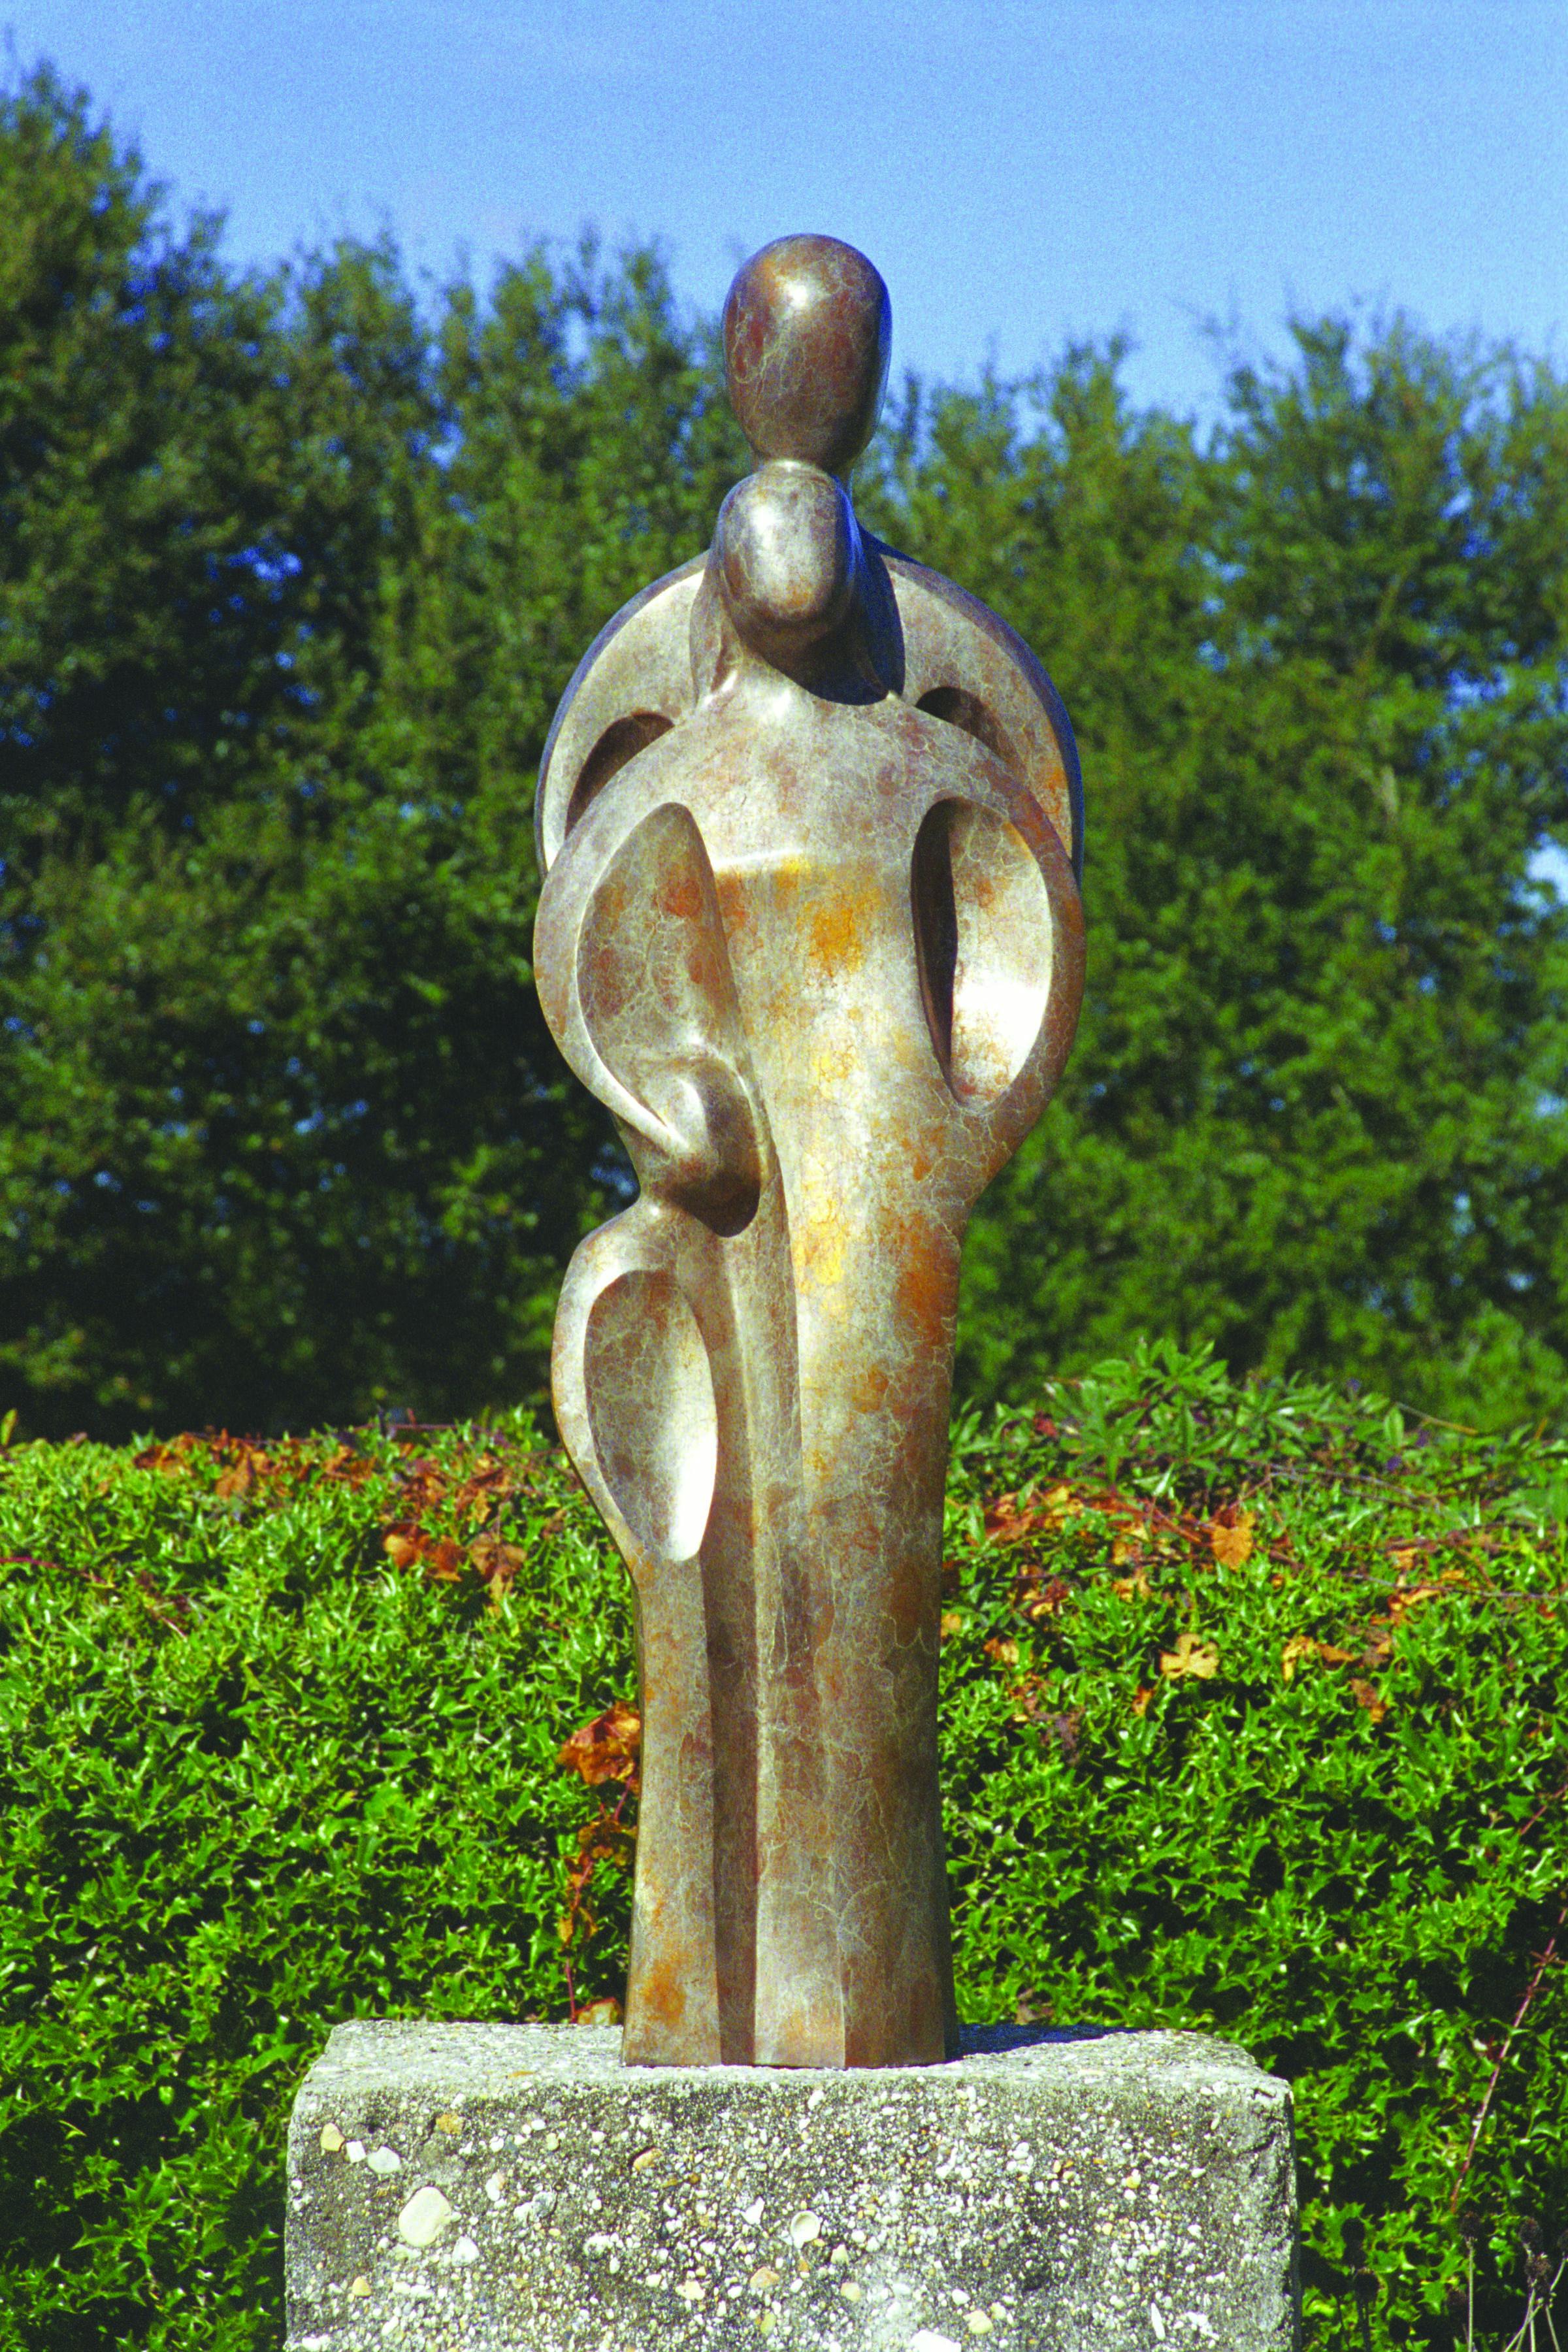 SERENITY - Sculpture by W Stanley Proctor